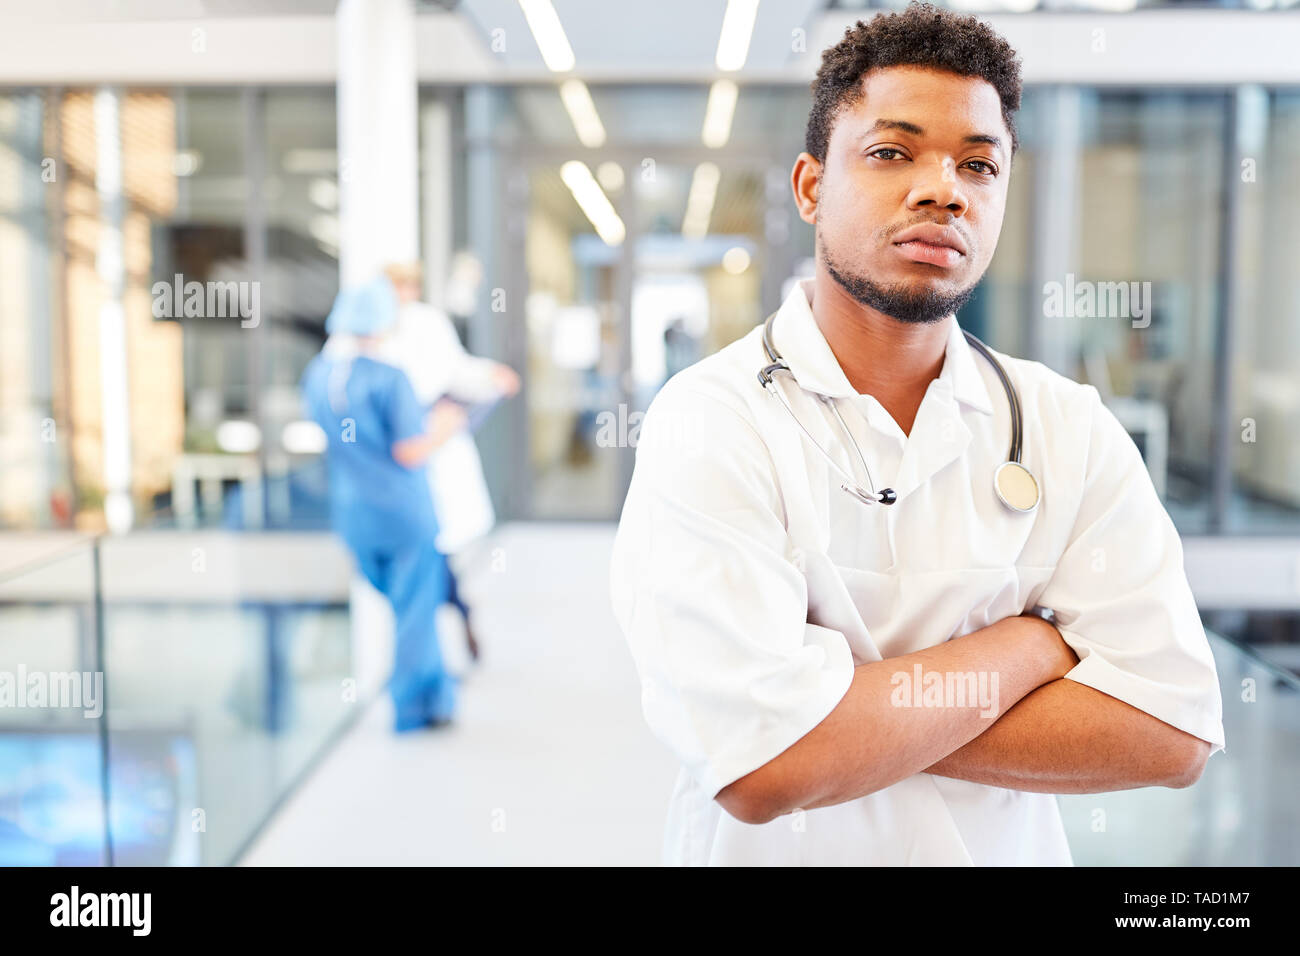 Junge afrikanische Menschen als medizin student oder medizinische Assistentin im Krankenhaus Stockfoto